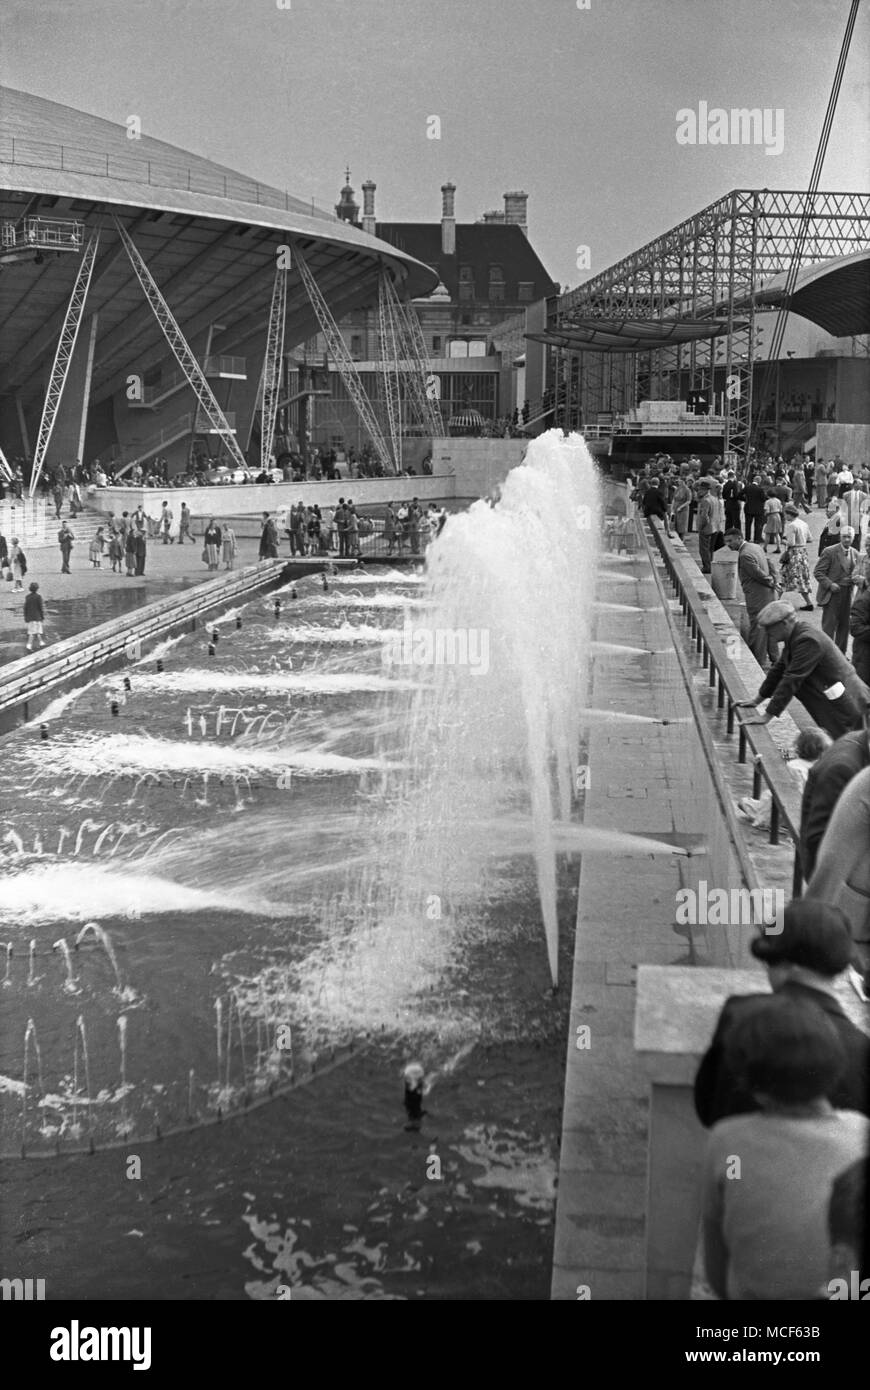 Grande piscine avec plusieurs fontaines, Festival of Britain, Londres, 1951 Banque D'Images